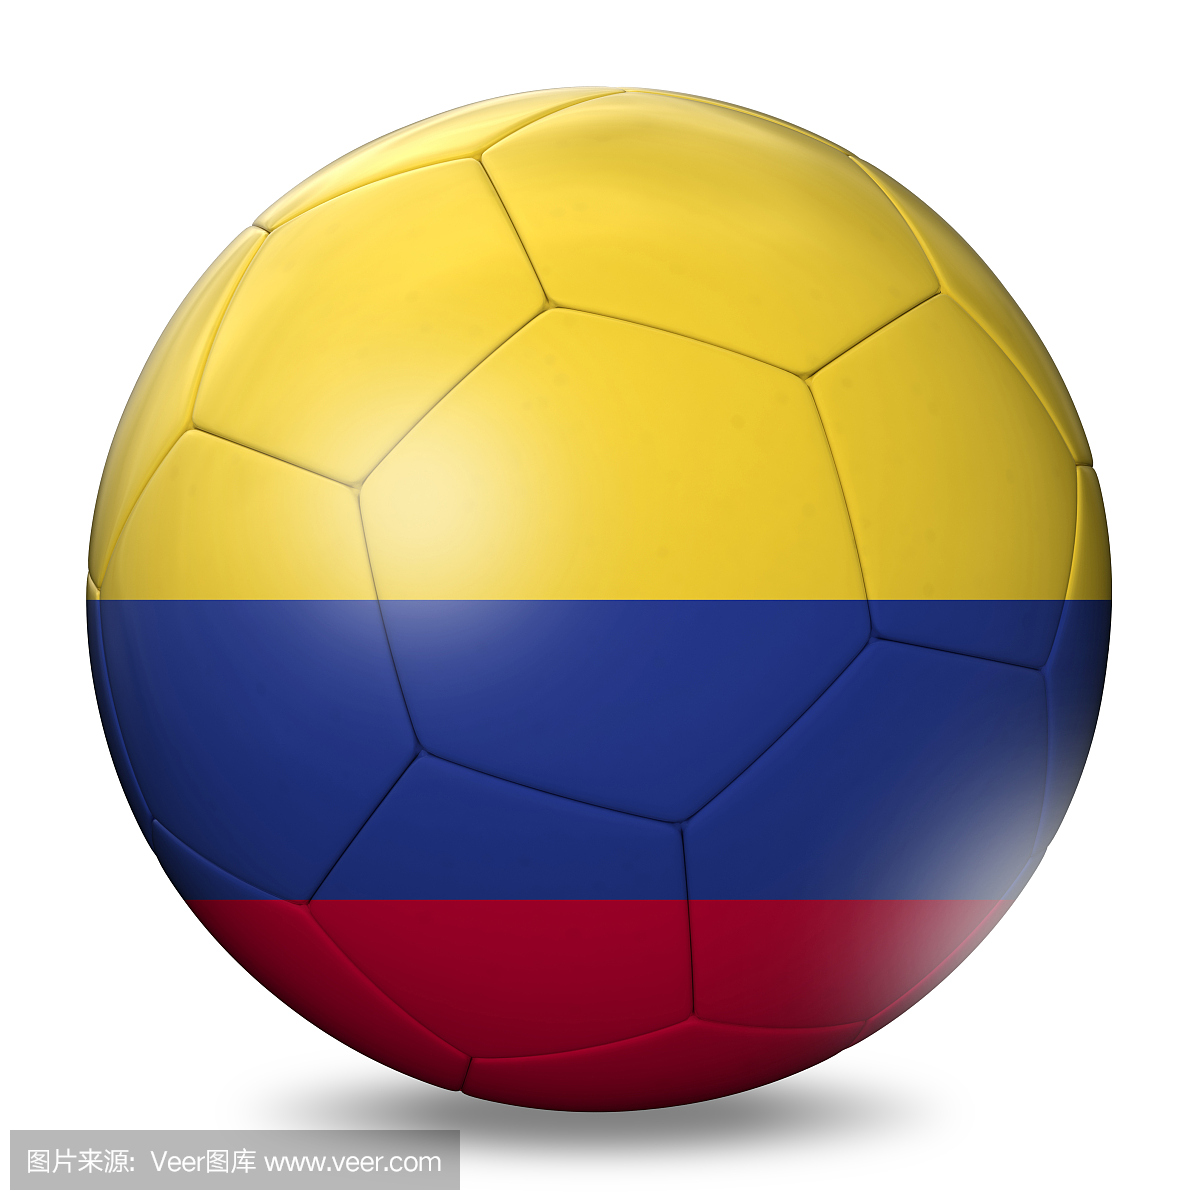 哥伦比亚国旗,哥伦比亚国,哥伦比亚国国旗,哥伦